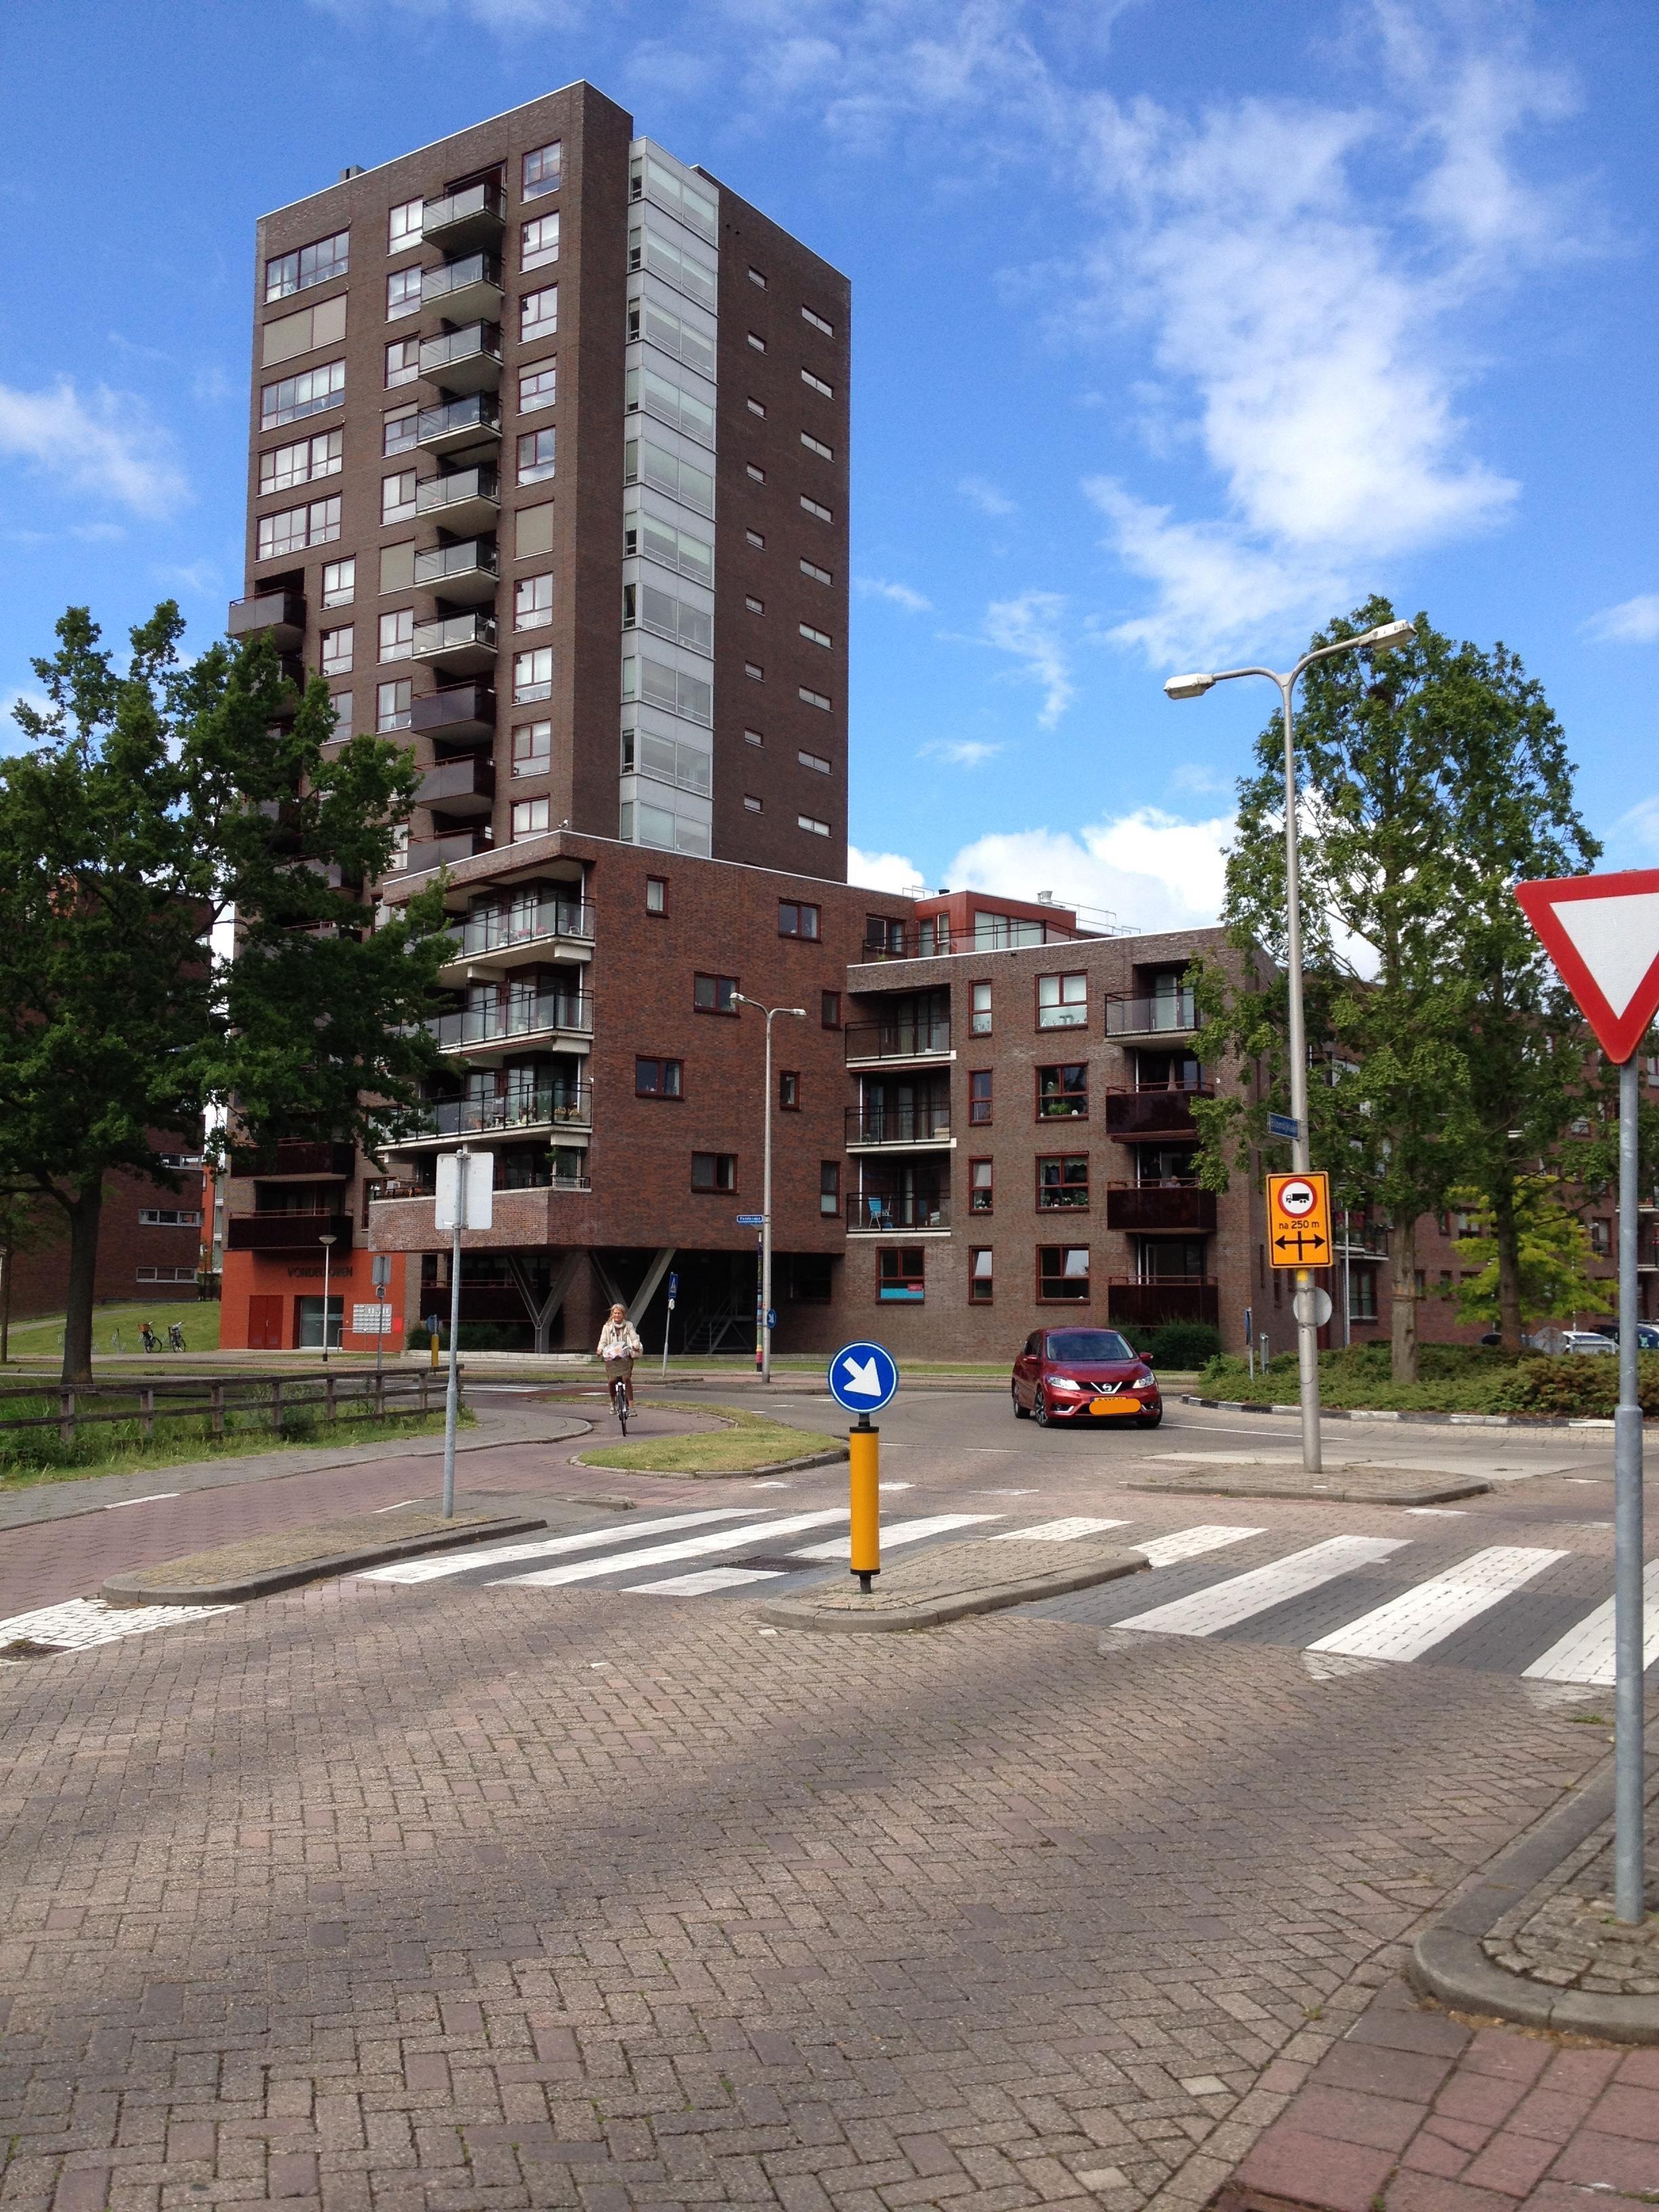 Jan Luykenstraat 71, 2985 BV Ridderkerk, Nederland